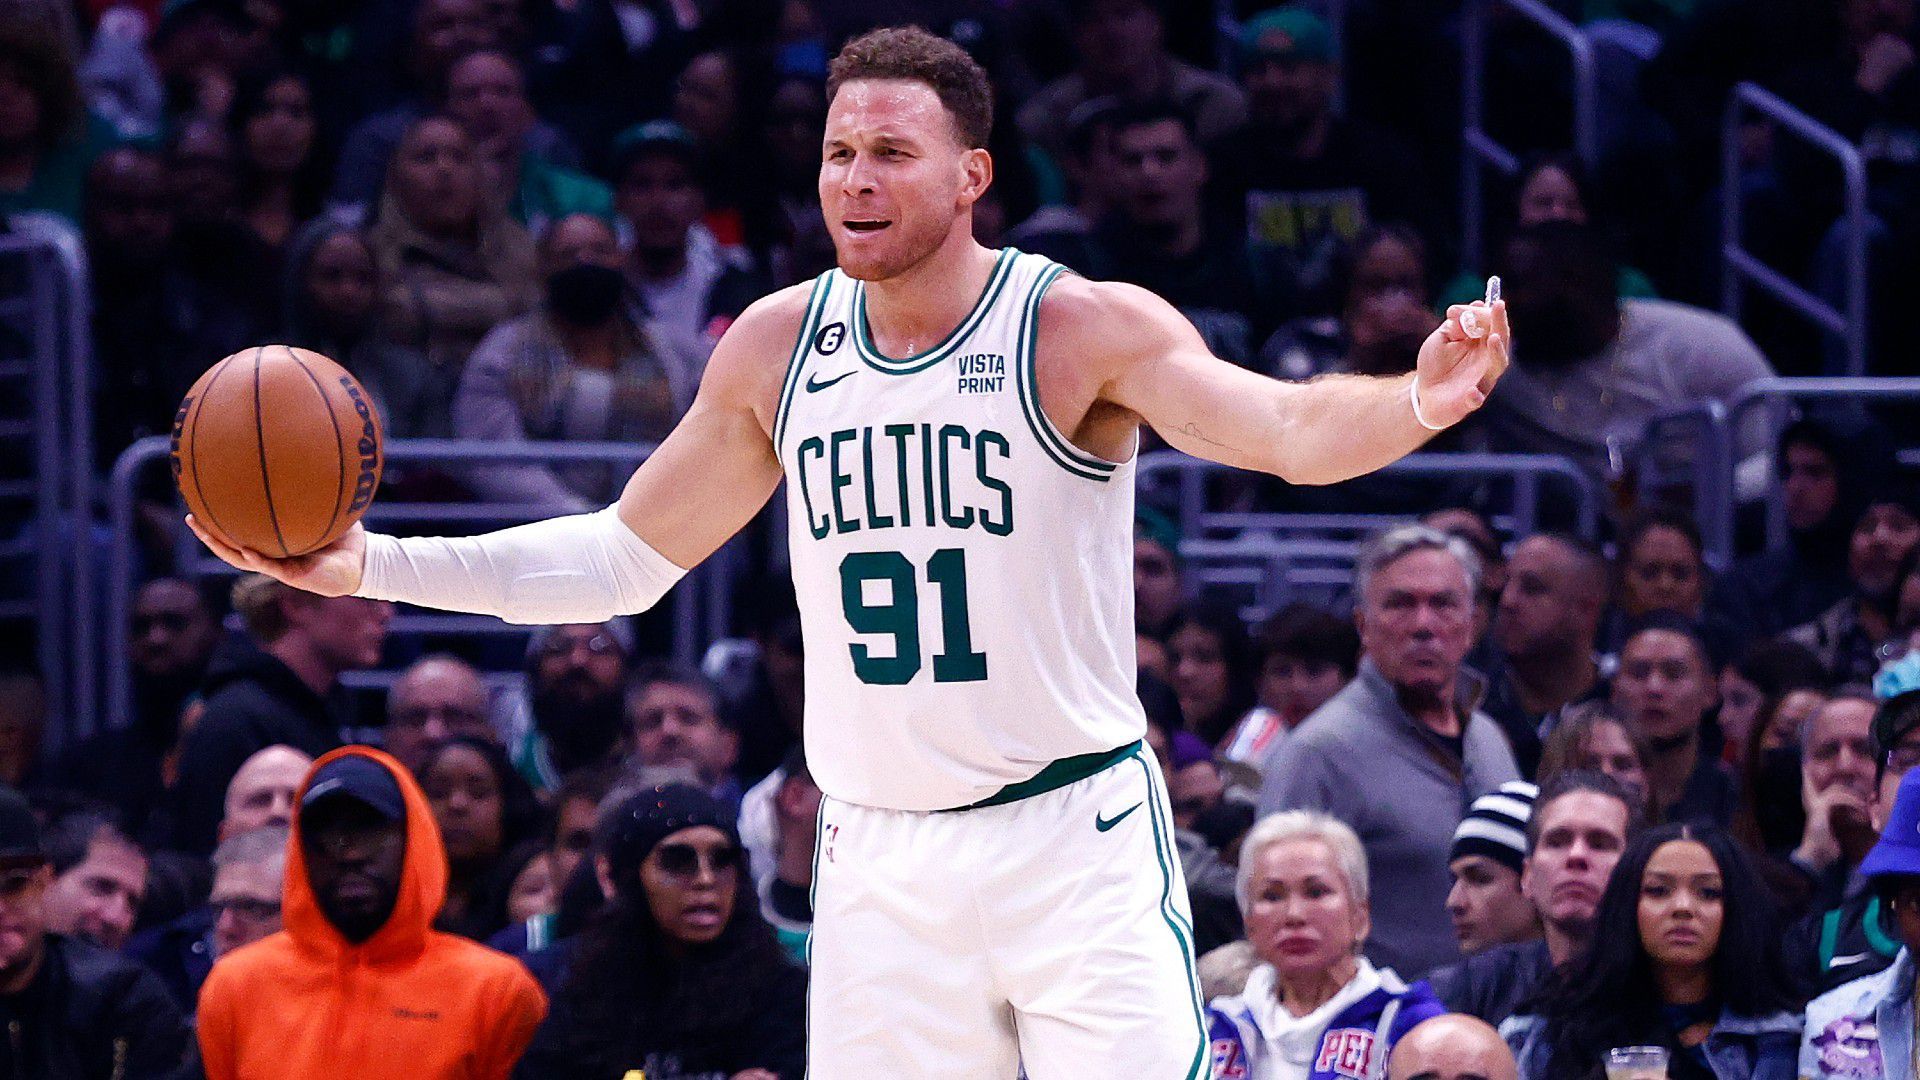 Ismét kikapott a ligaelső Celtics, Doncic 38 ponttal tért vissza az NBA-ben